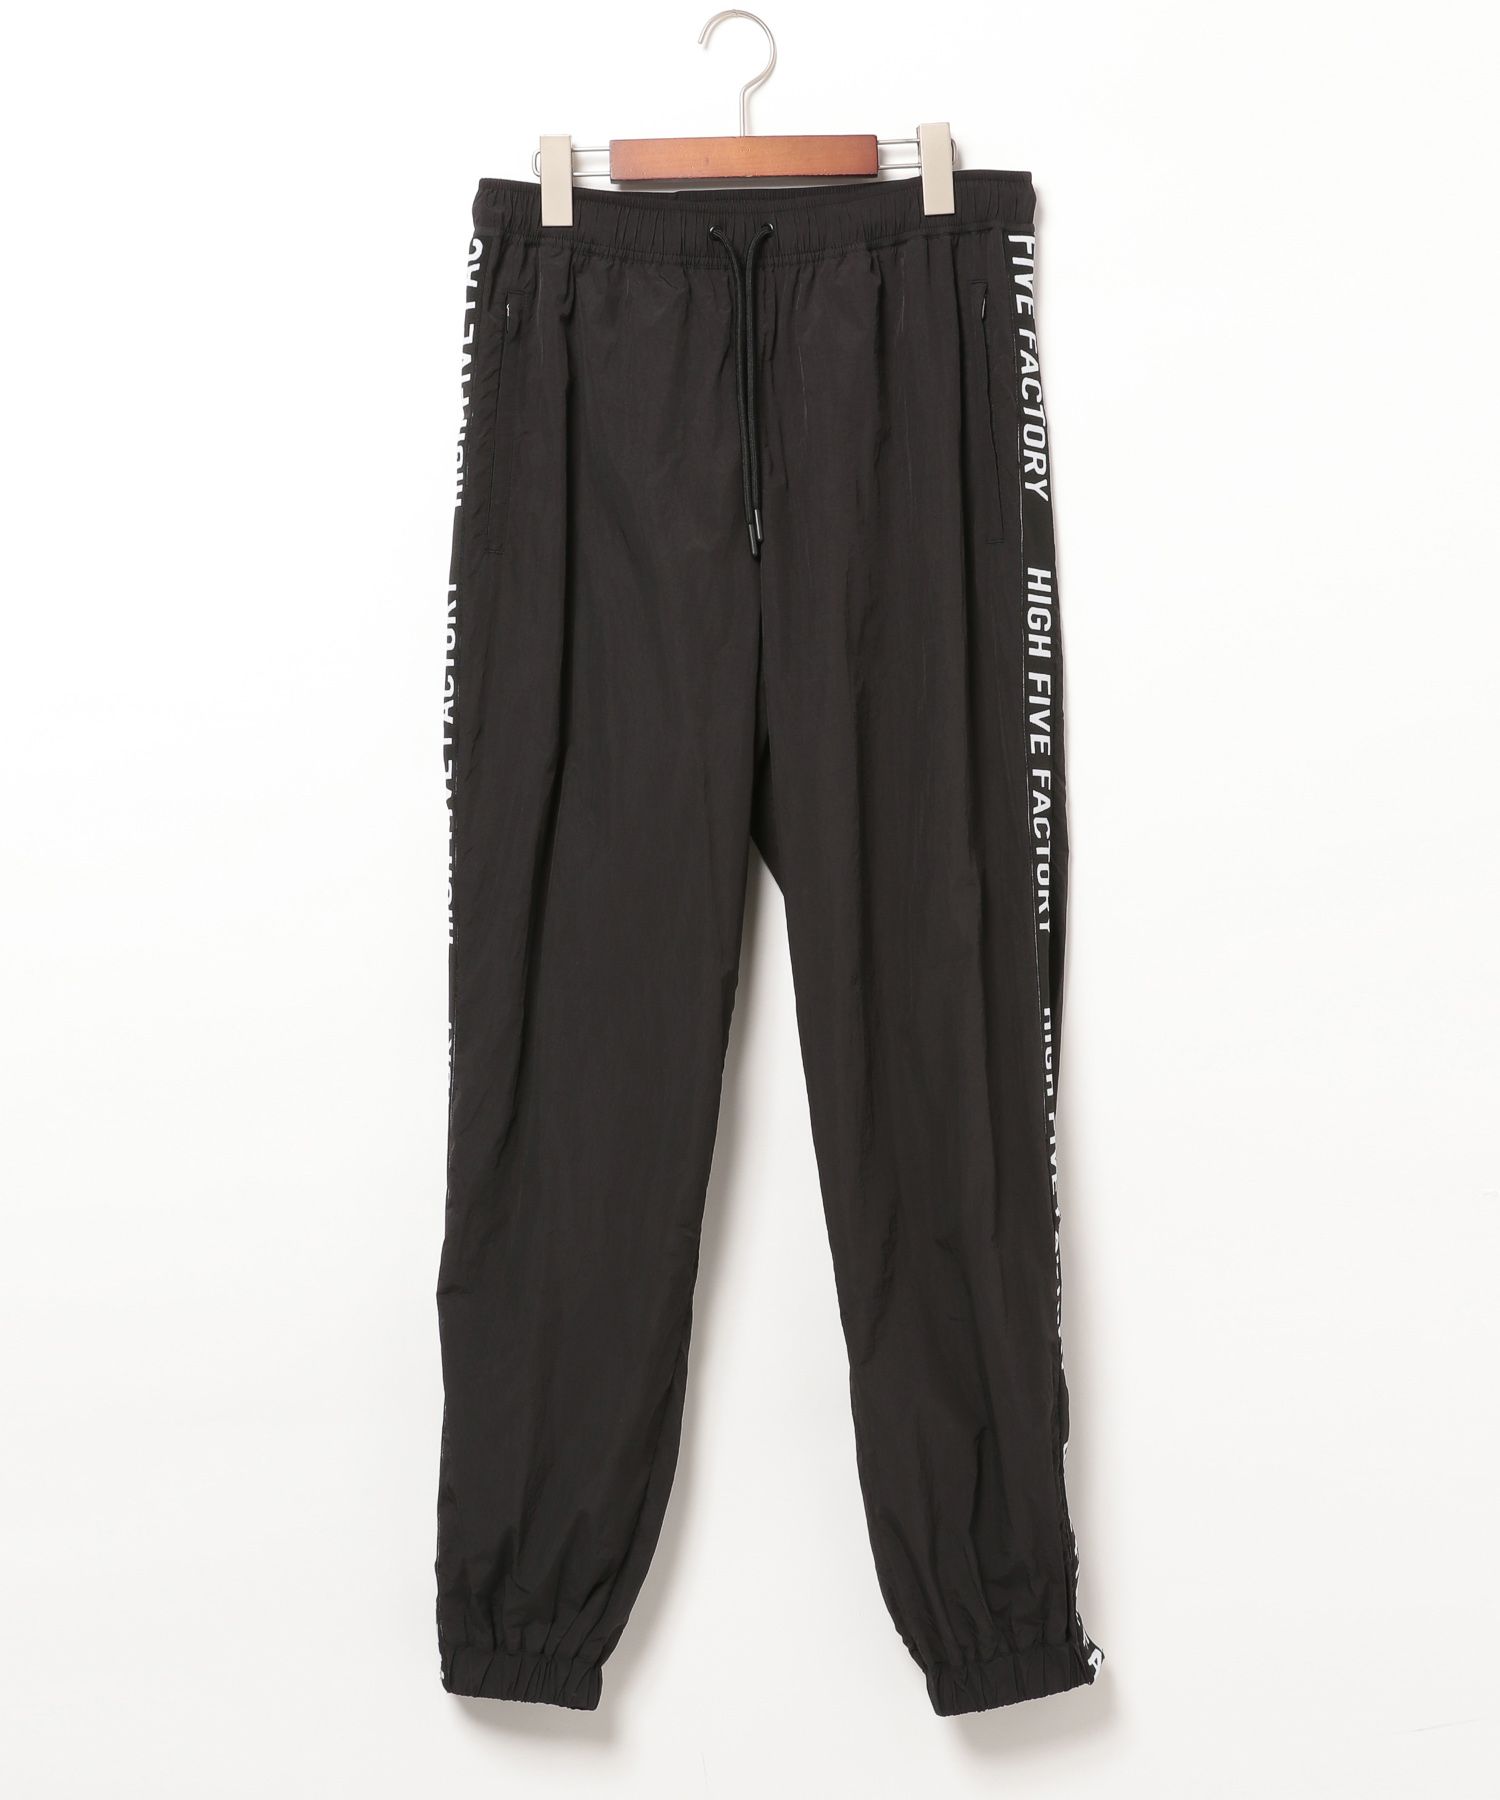 ハイファイブファクトリー Nylon Pants BLACK S 高級素材使用ブランド